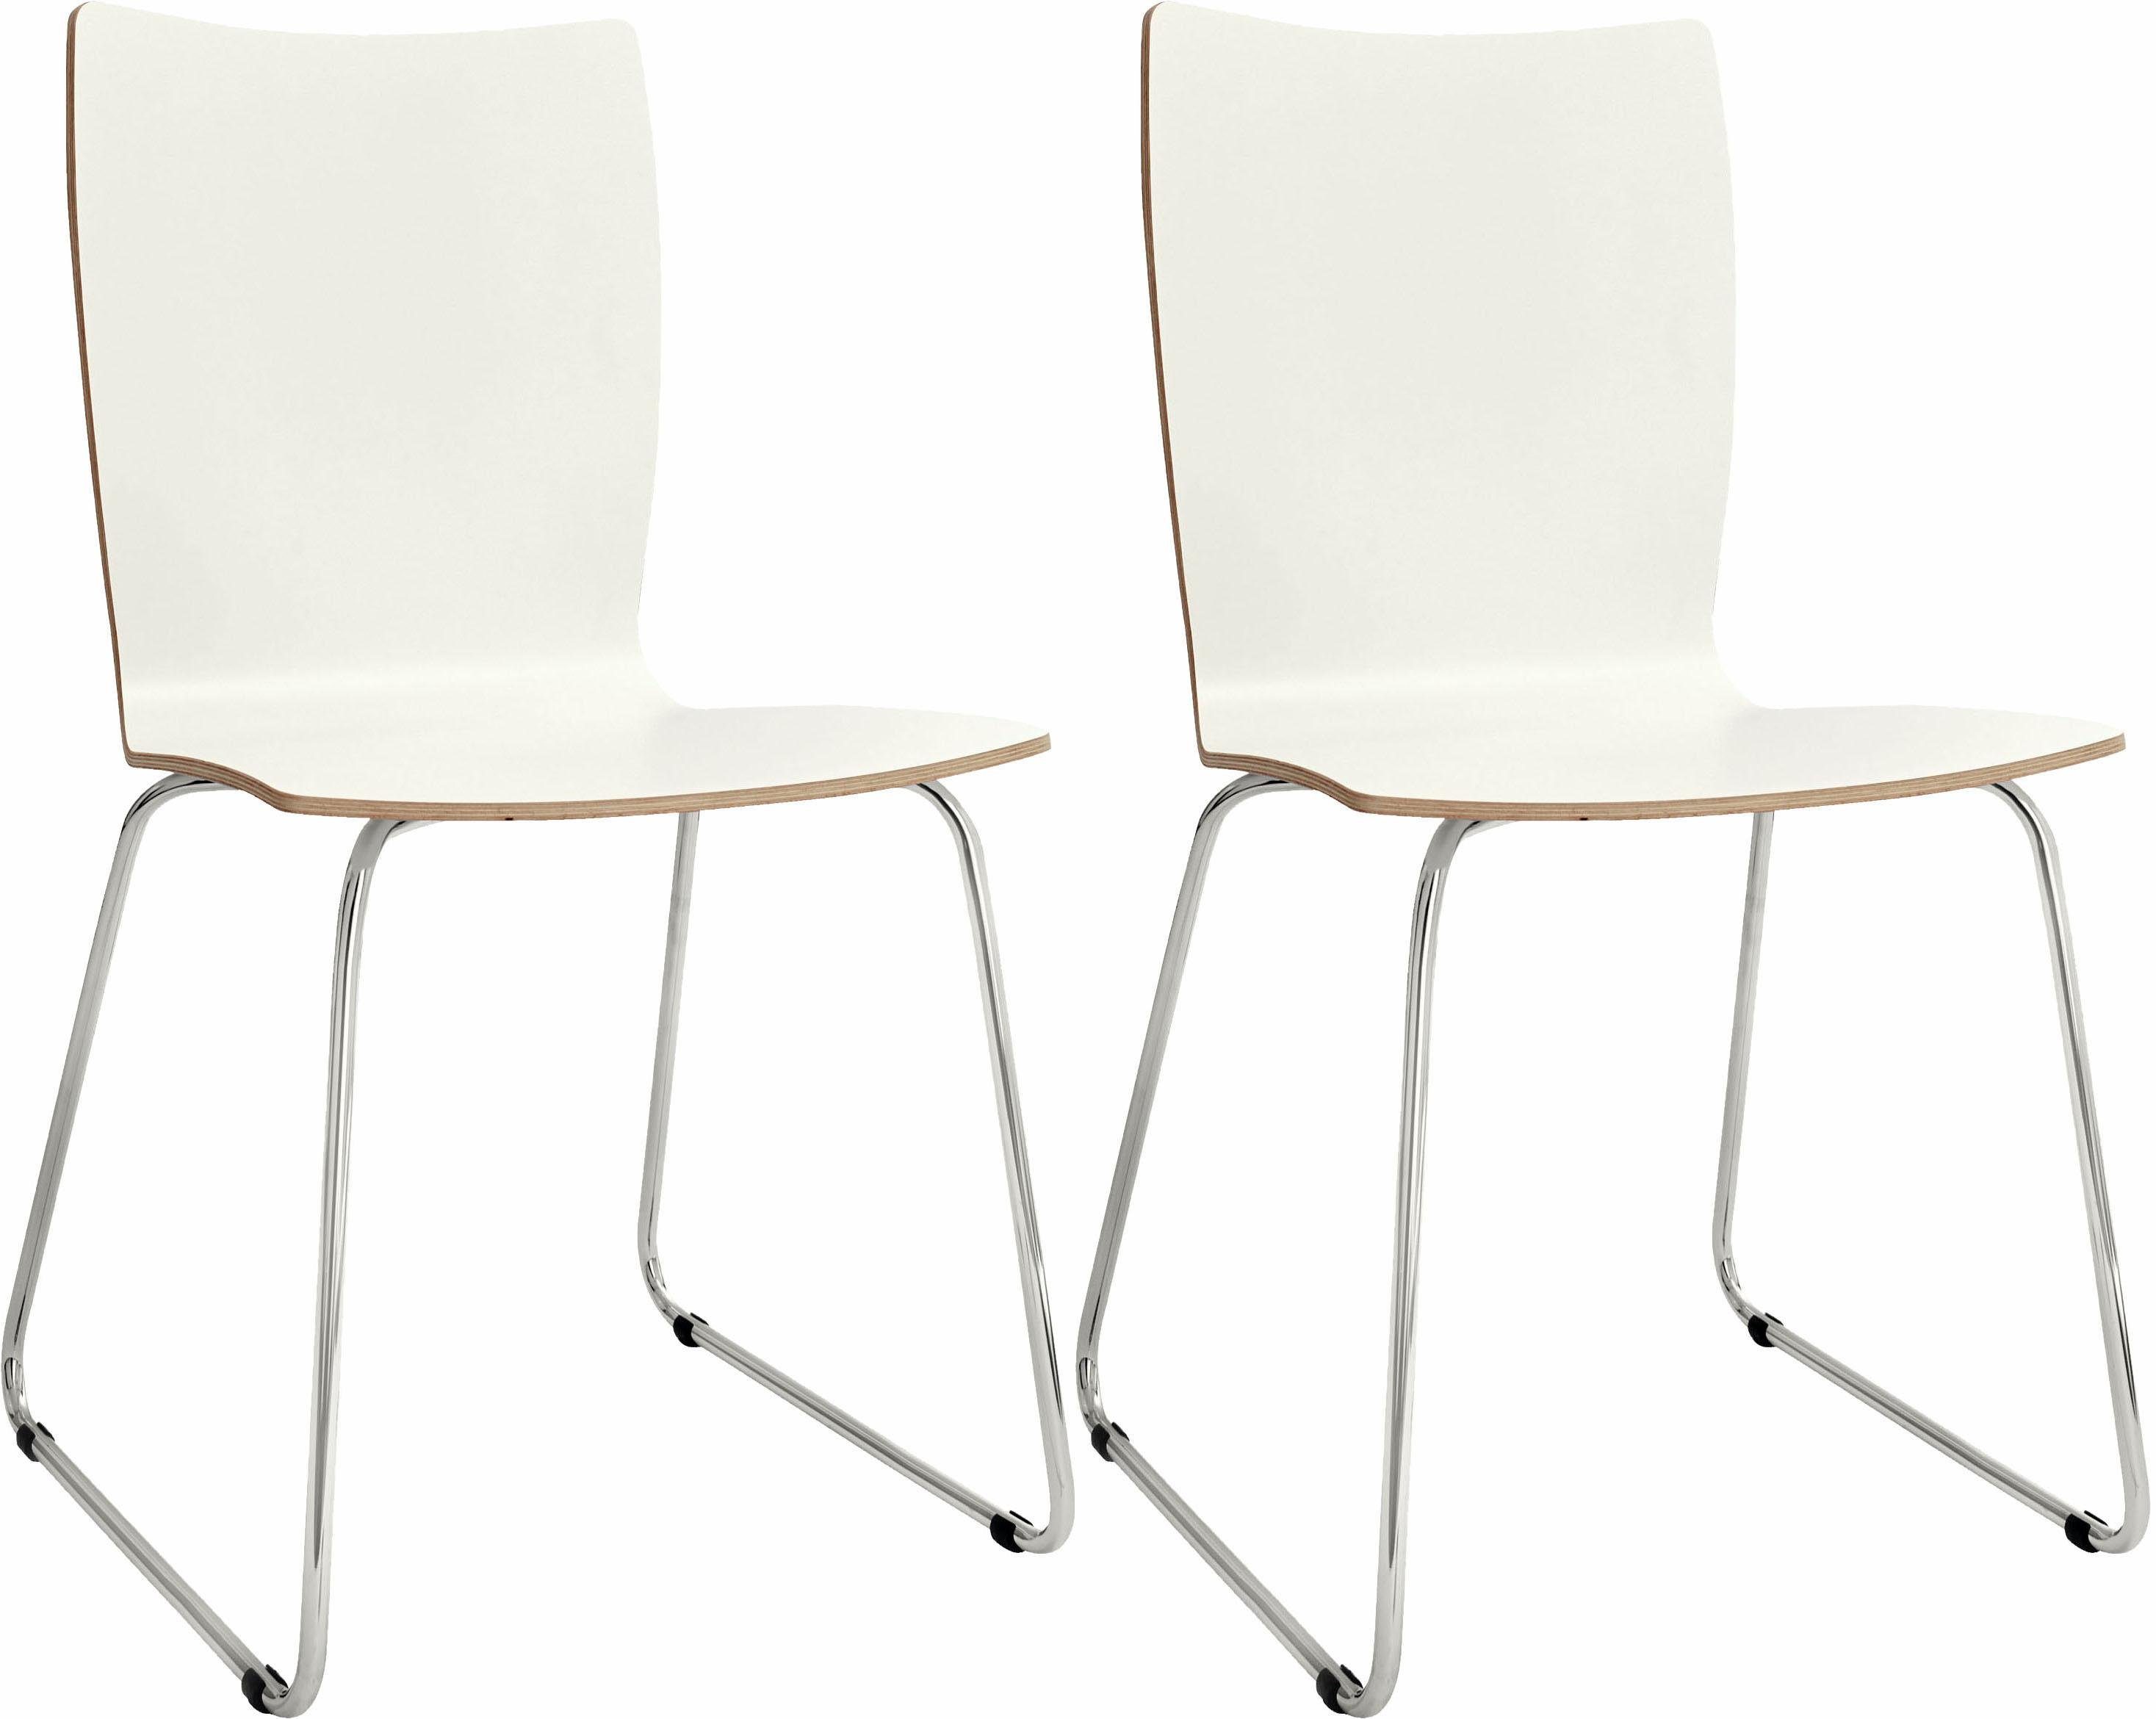 now! by hülsta Stuhl »S 20-2« (Set, 2 Stück), mit Kufengestell aus Chrom  online kaufen | OTTO